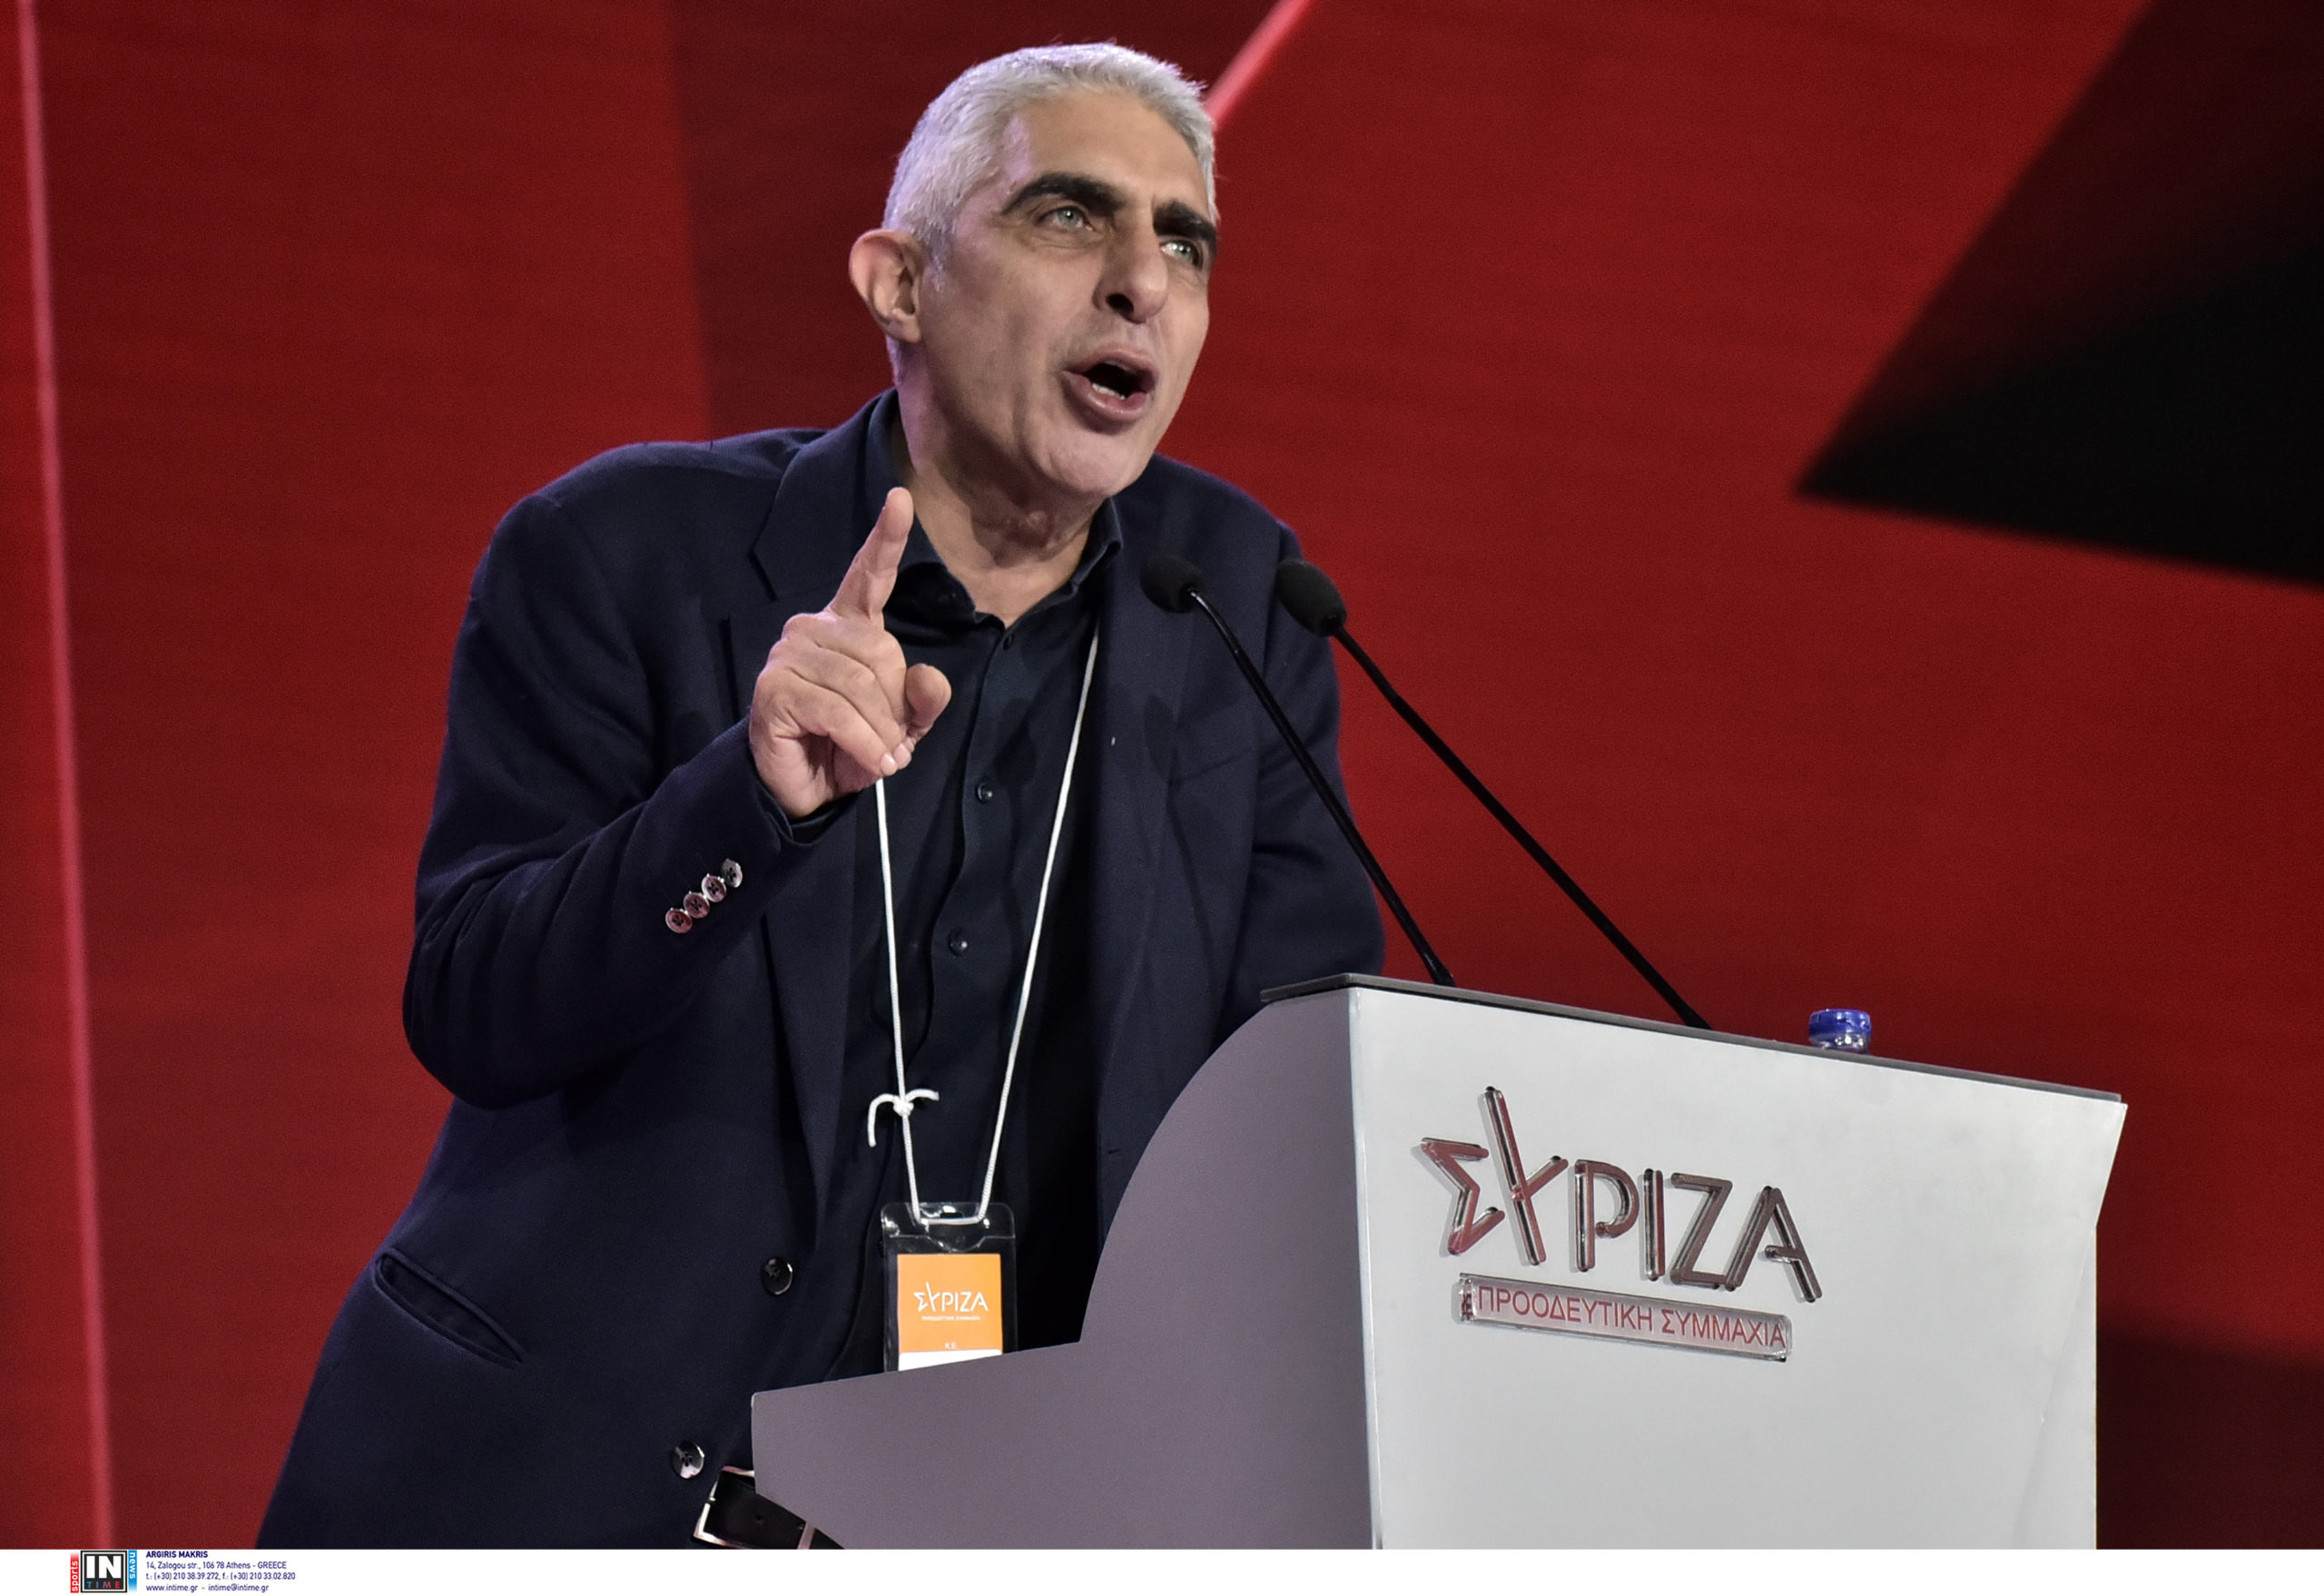 Γιώργος Τσίπρας: Όχι μόνο δεν το αποκλείω, το εύχομαι να επιστρέψει ο Αλέξης Τσίπρας